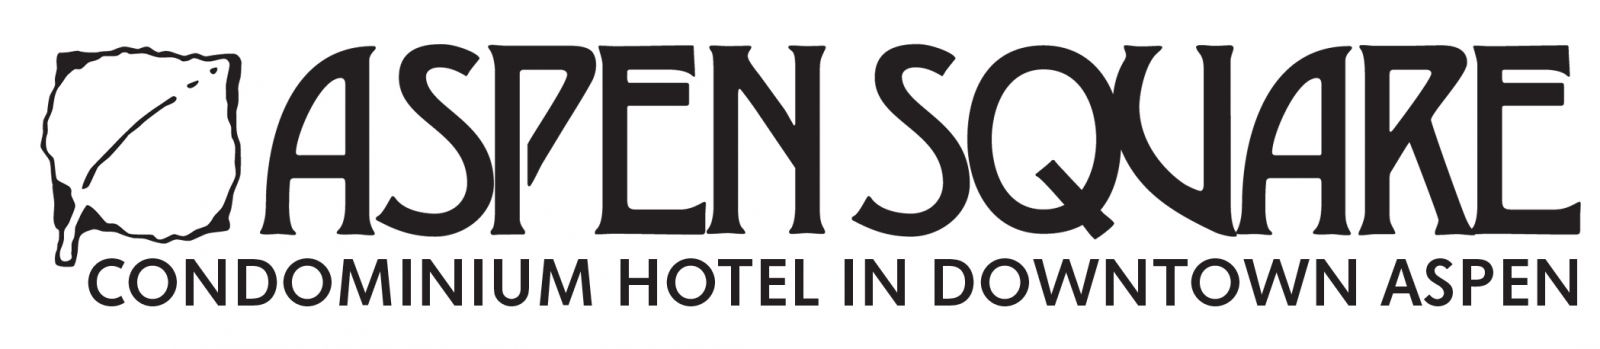 Aspen Square logo